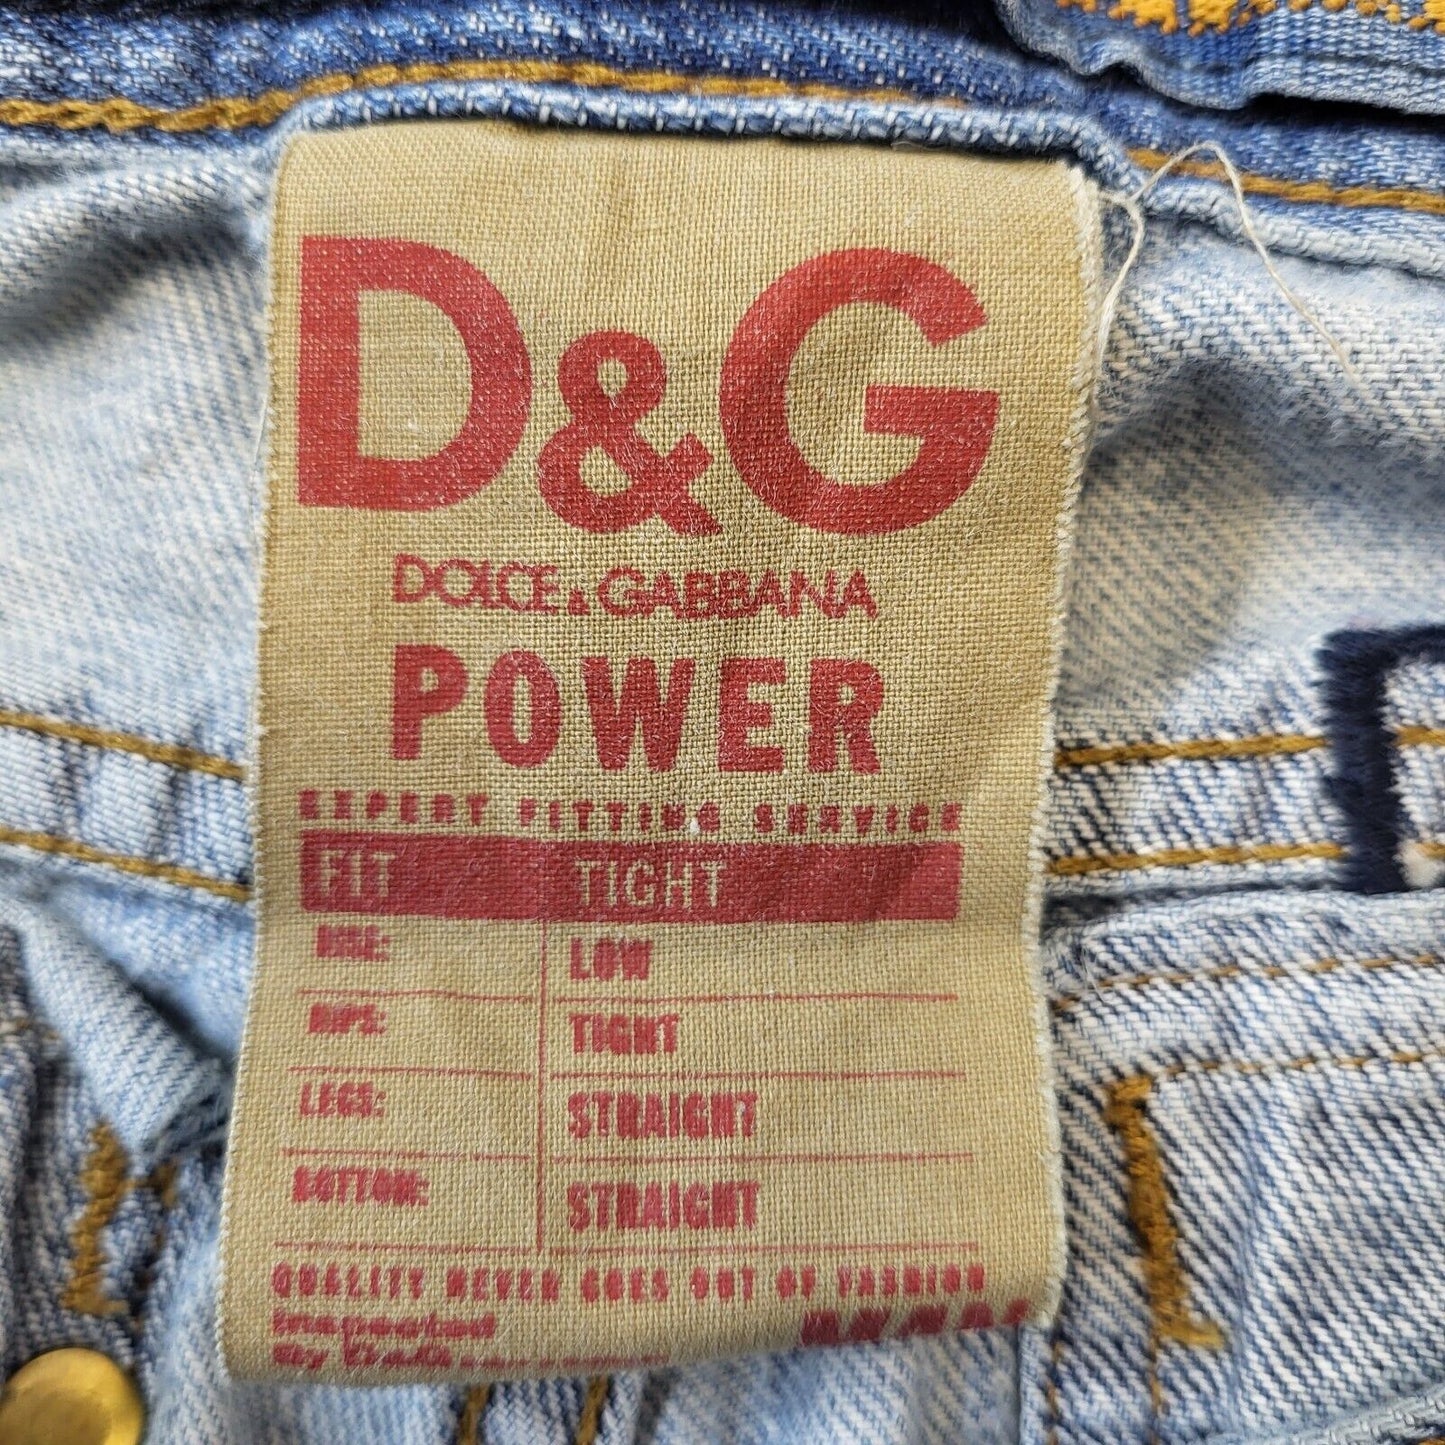 D&G Jeans (S)